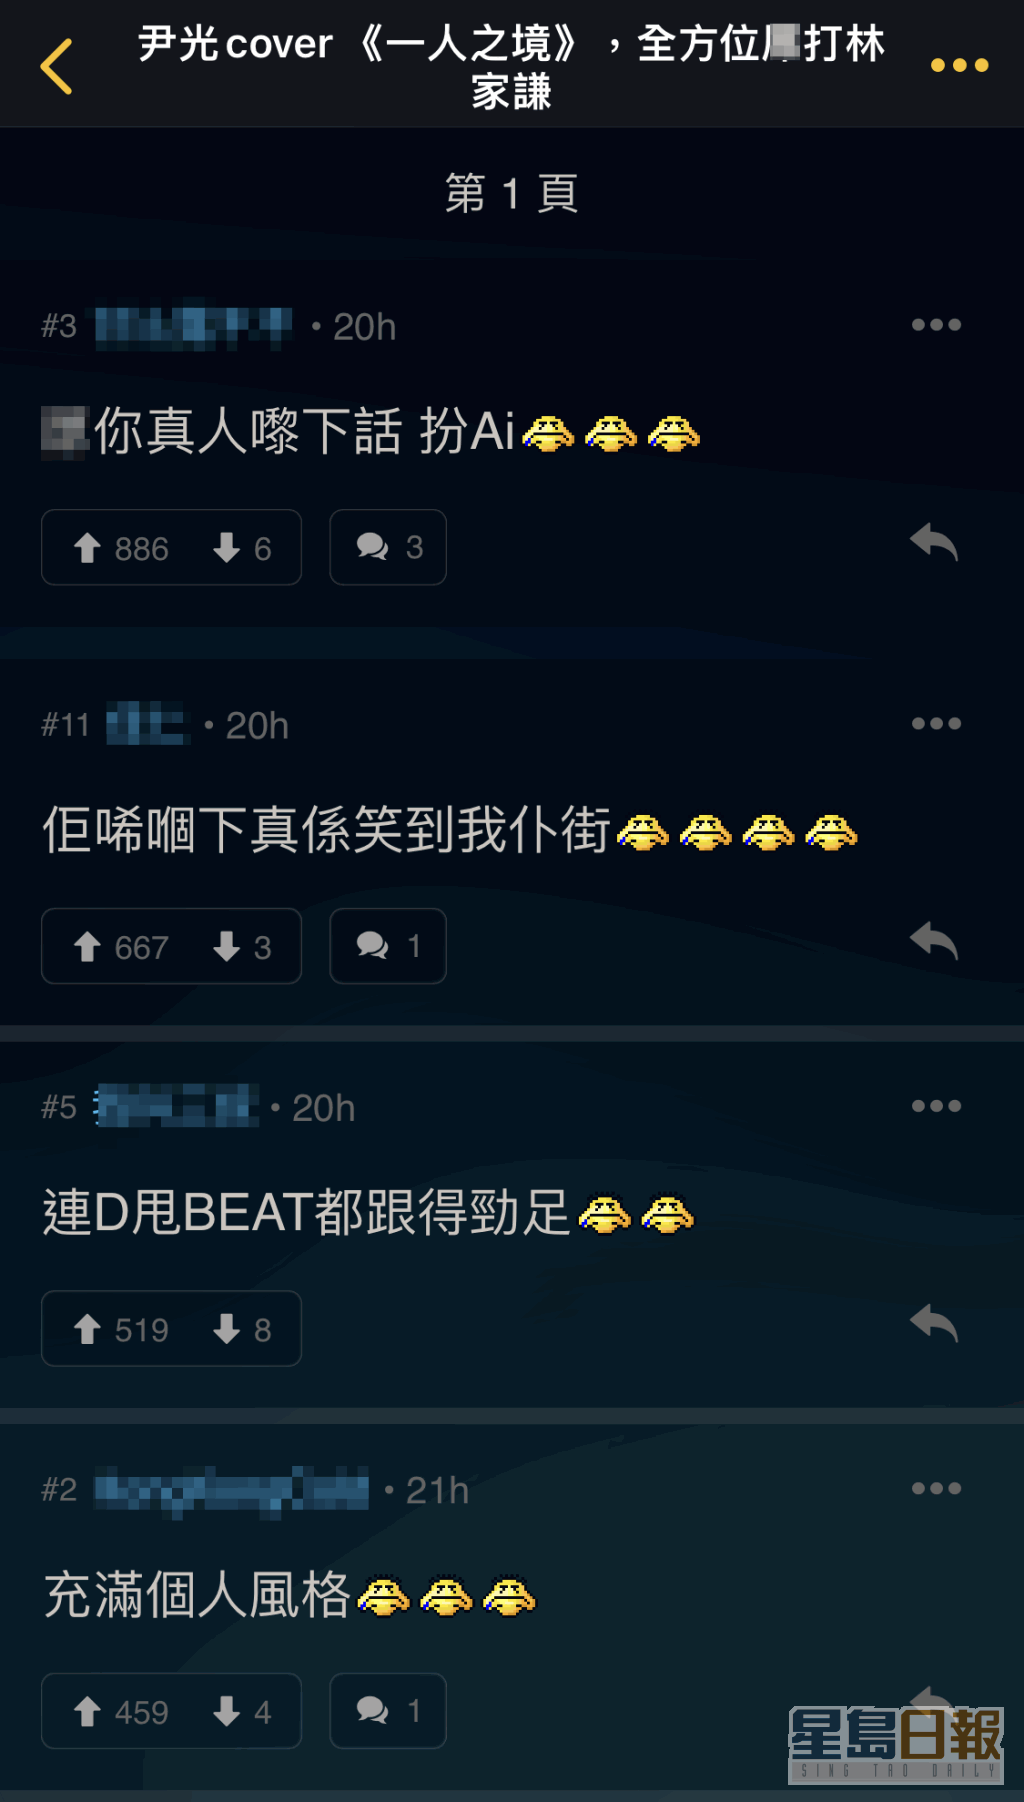 网民笑说AI尹光唱《一人之境》连甩beat都跟足。